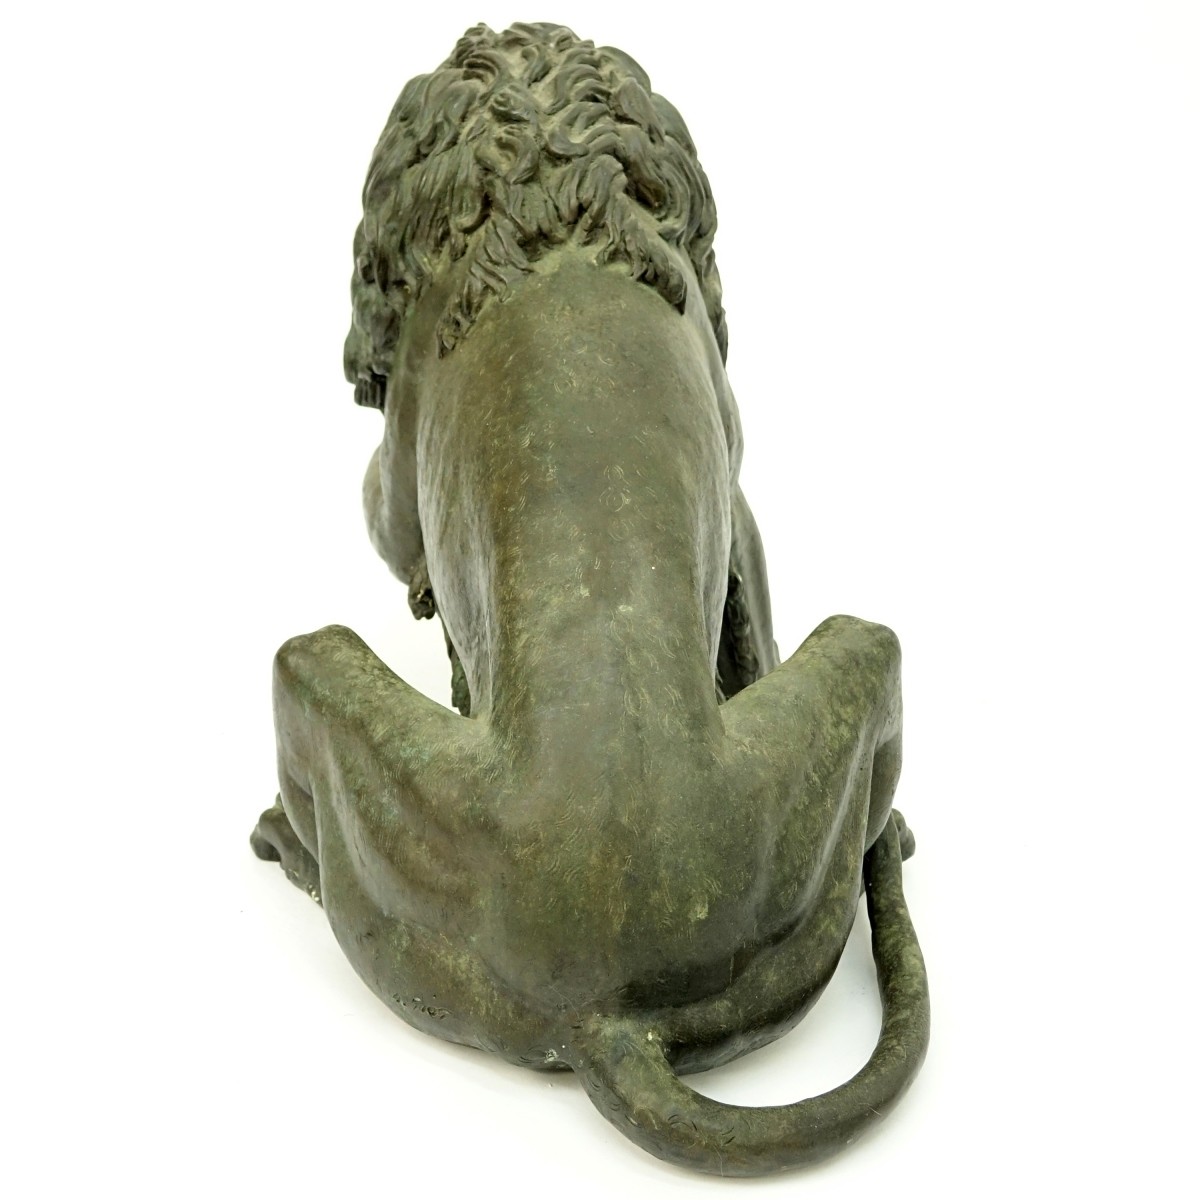 Modern Bronze Sculpture of a Lion